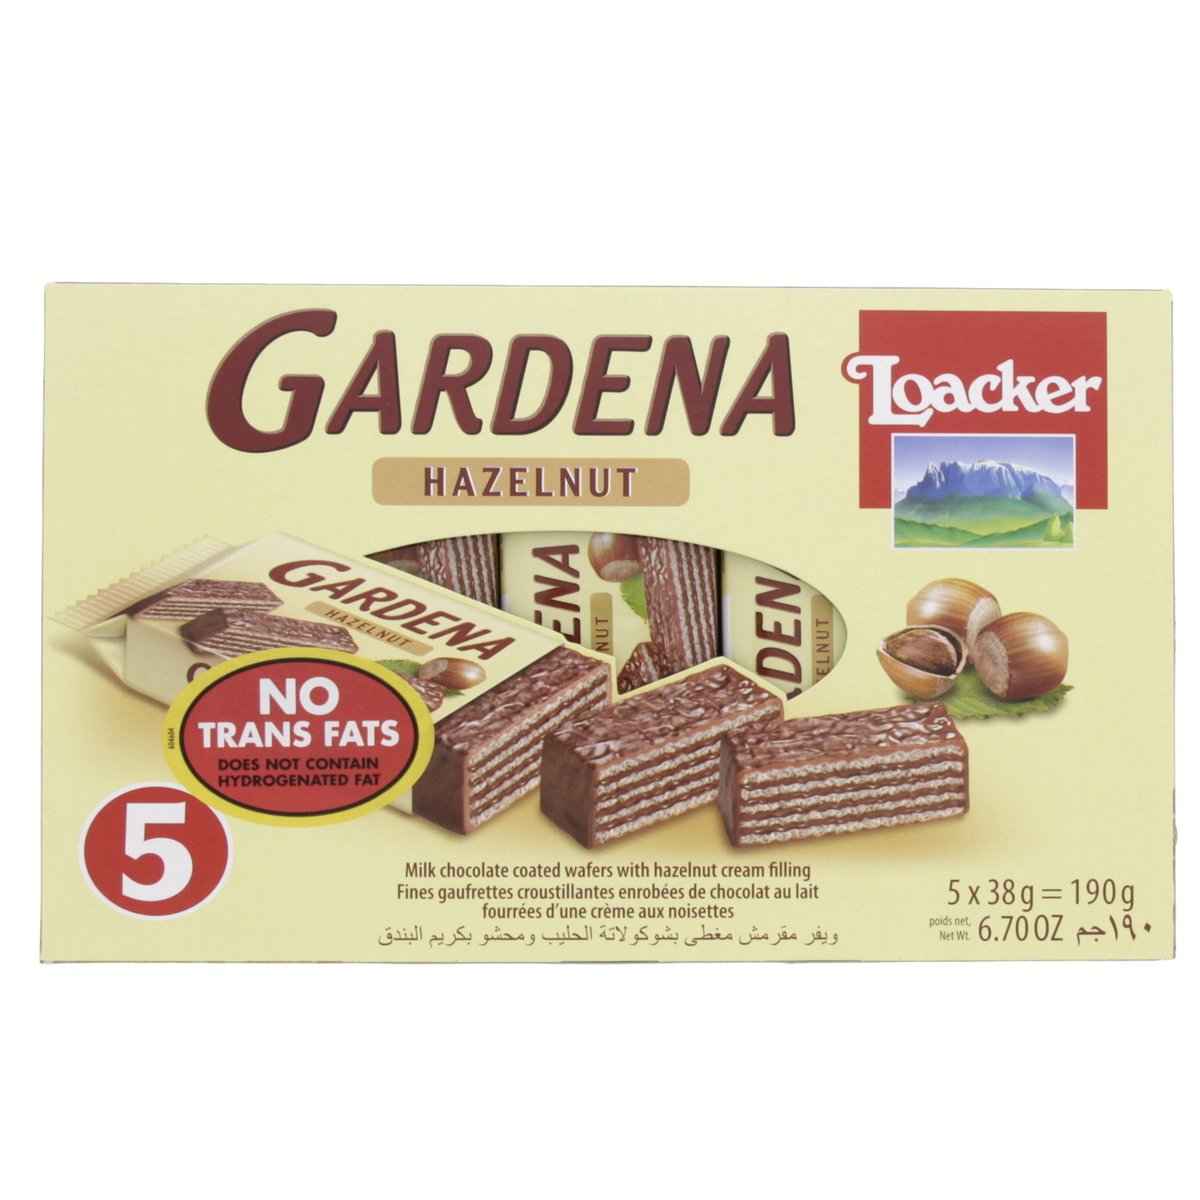 Loacker Gardena Hazelnut Wafers 5 x 38g